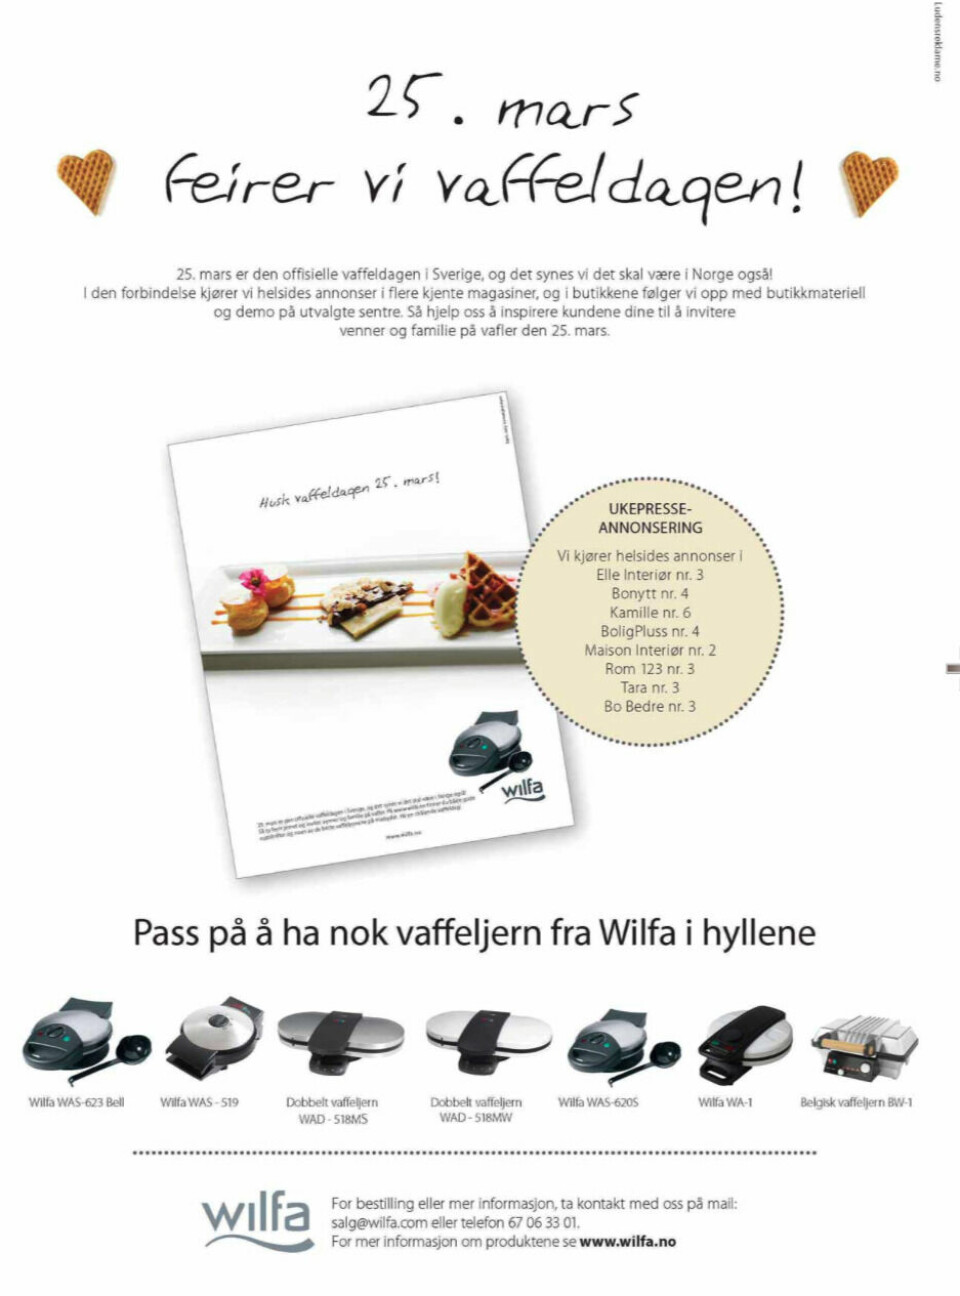 Vaffeldagen i Norge skjøt for alvor fart, etter at Wilfa rykket inn denne annonsen i fagbladet Elektronikkbransjen nr. 2/2010.